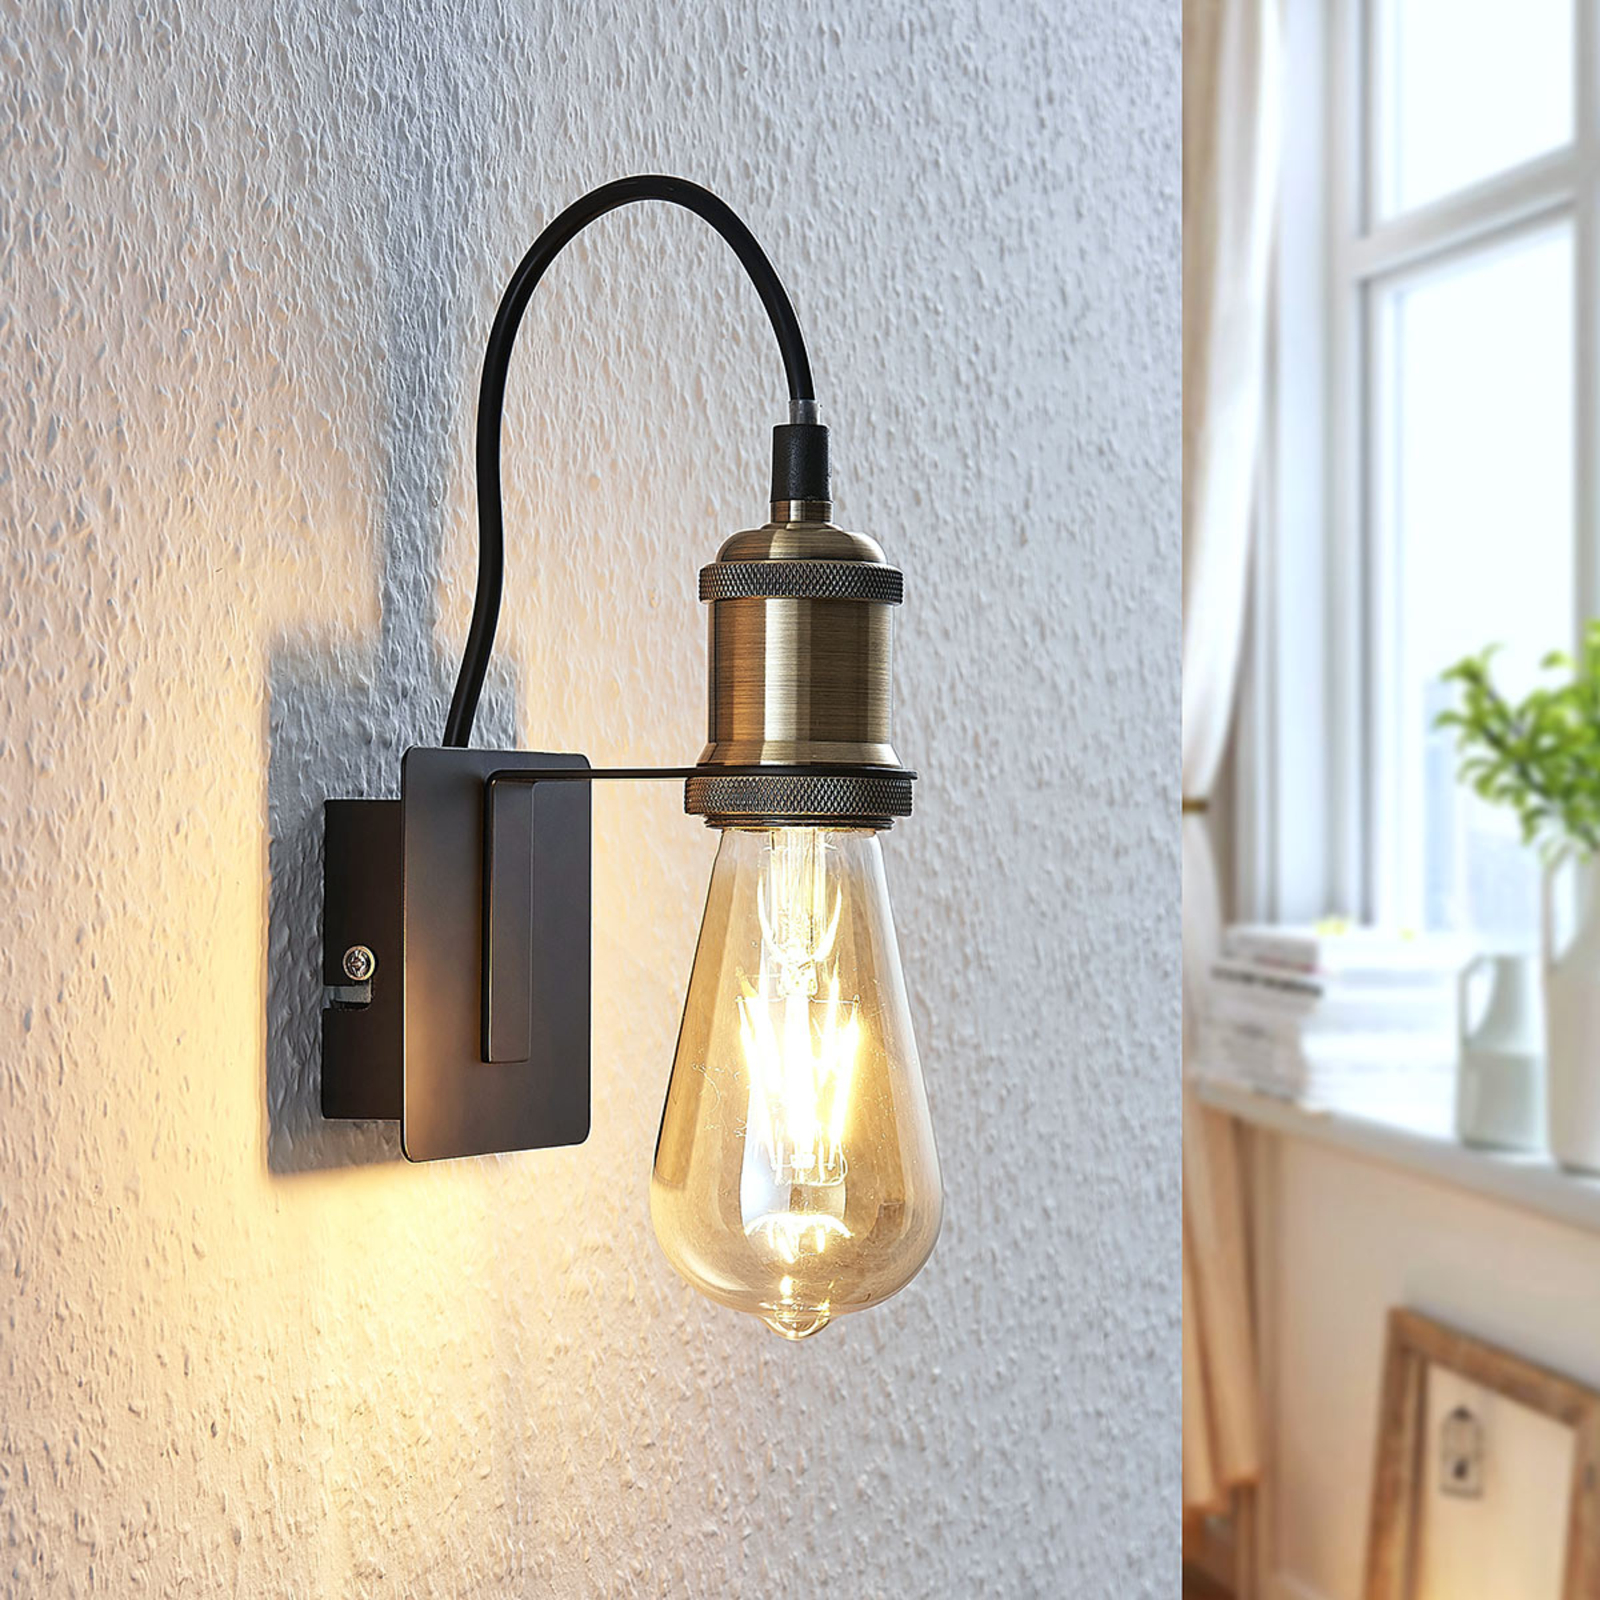 Voorstad Kan worden genegeerd Oxide Vintage wandlamp Aurella, antiek koper | Lampen24.be